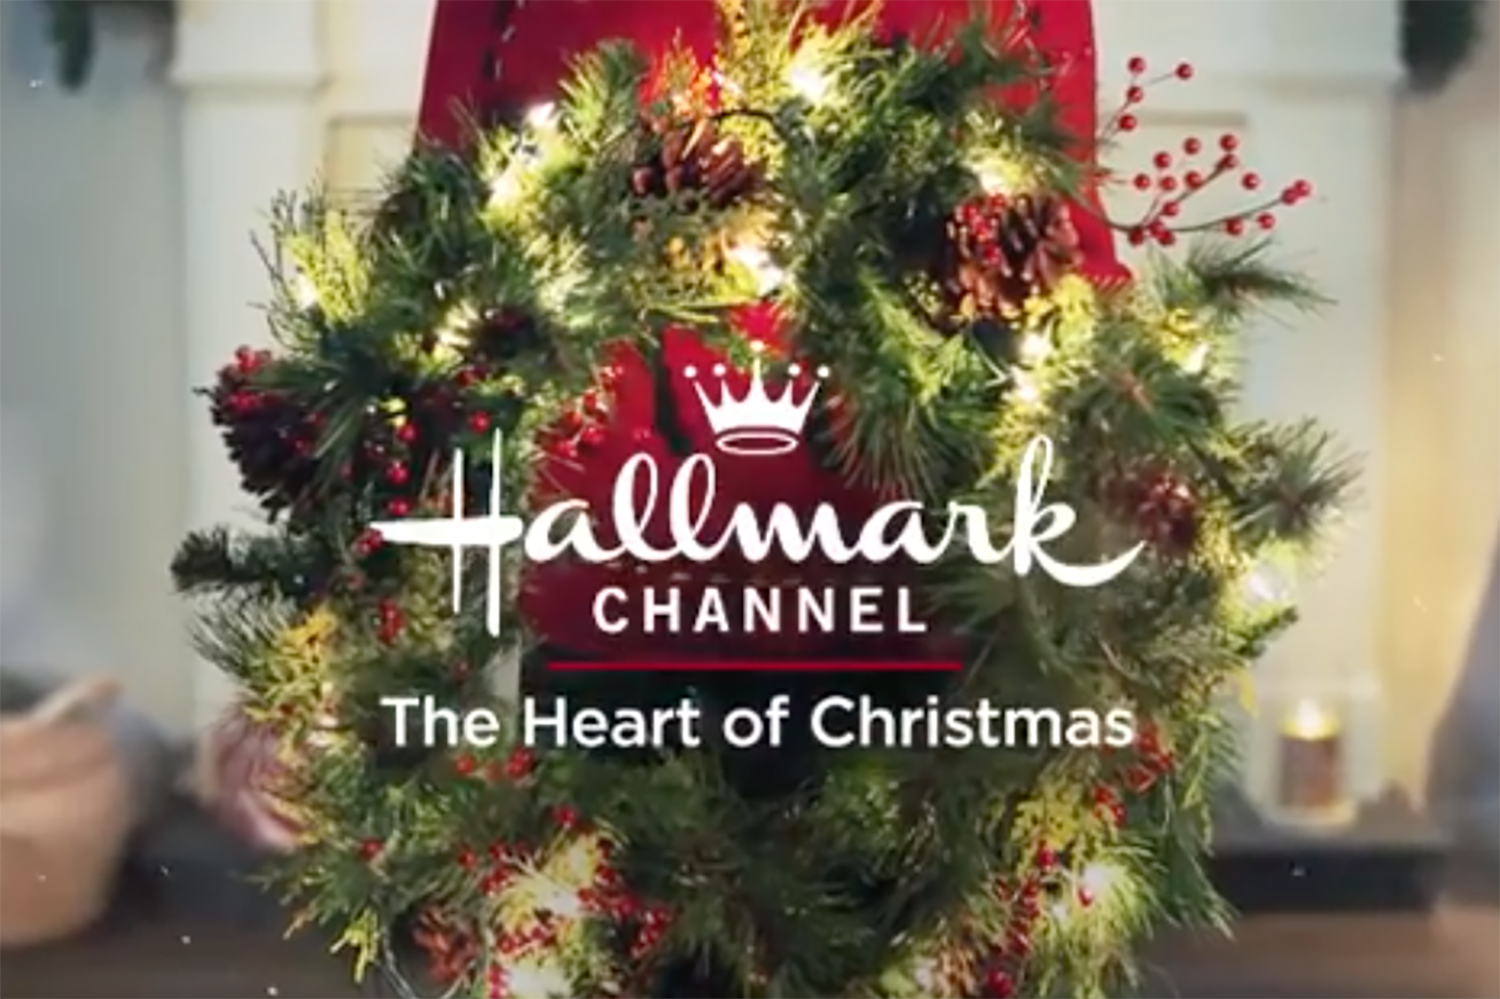 hallmark channel